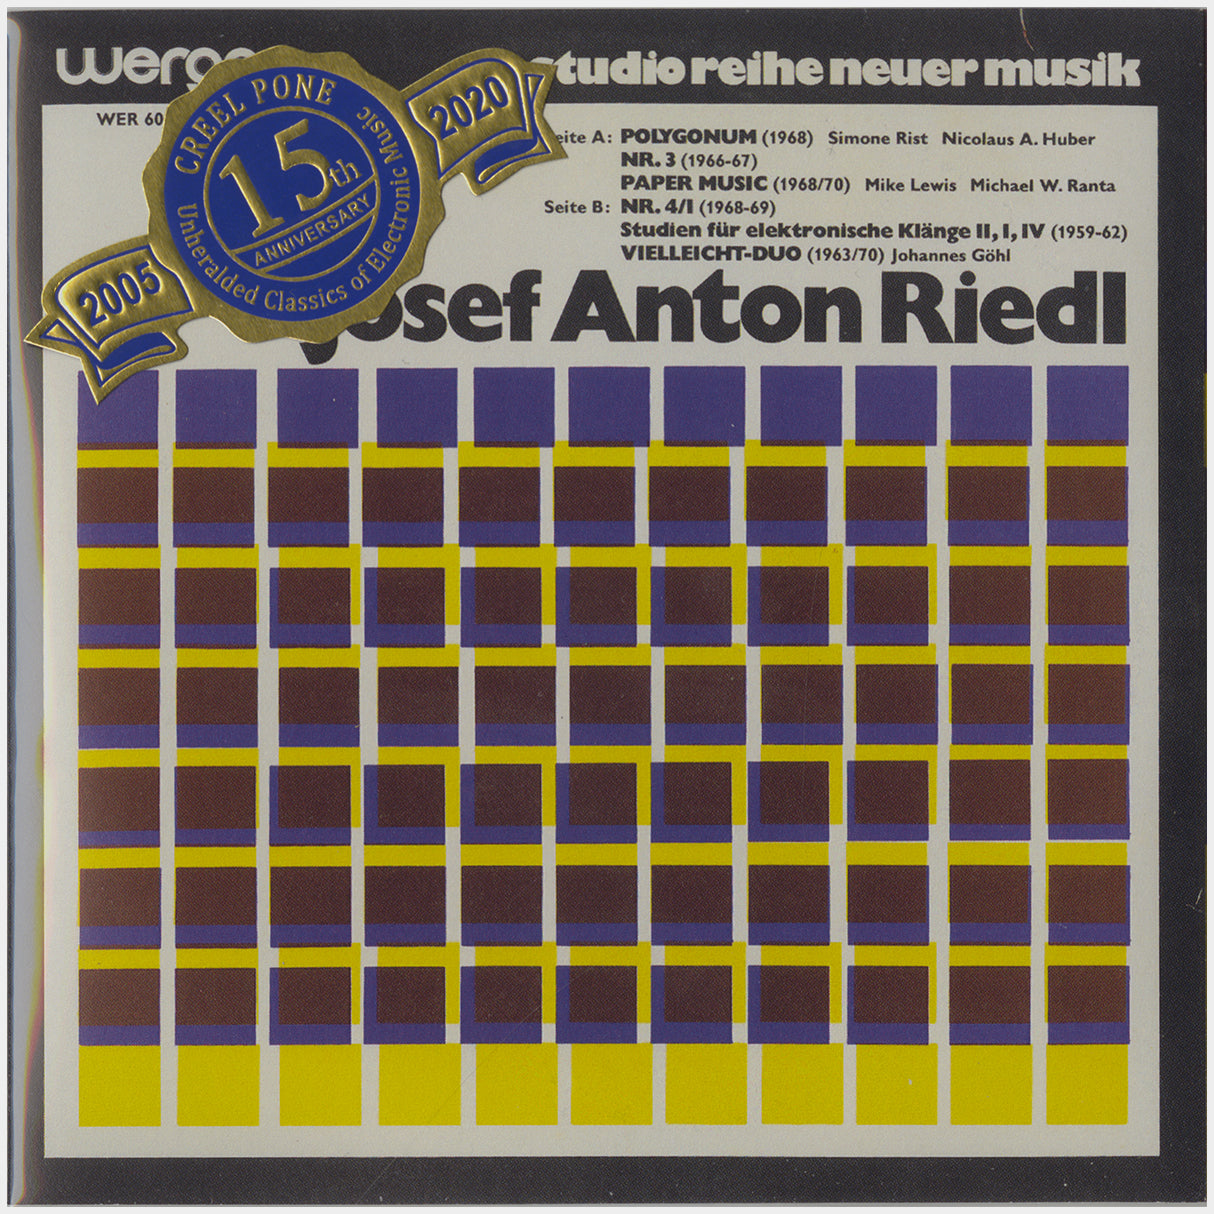 [CP 023 CD] Josef Anton Riedl; s/t, Klangfelder +